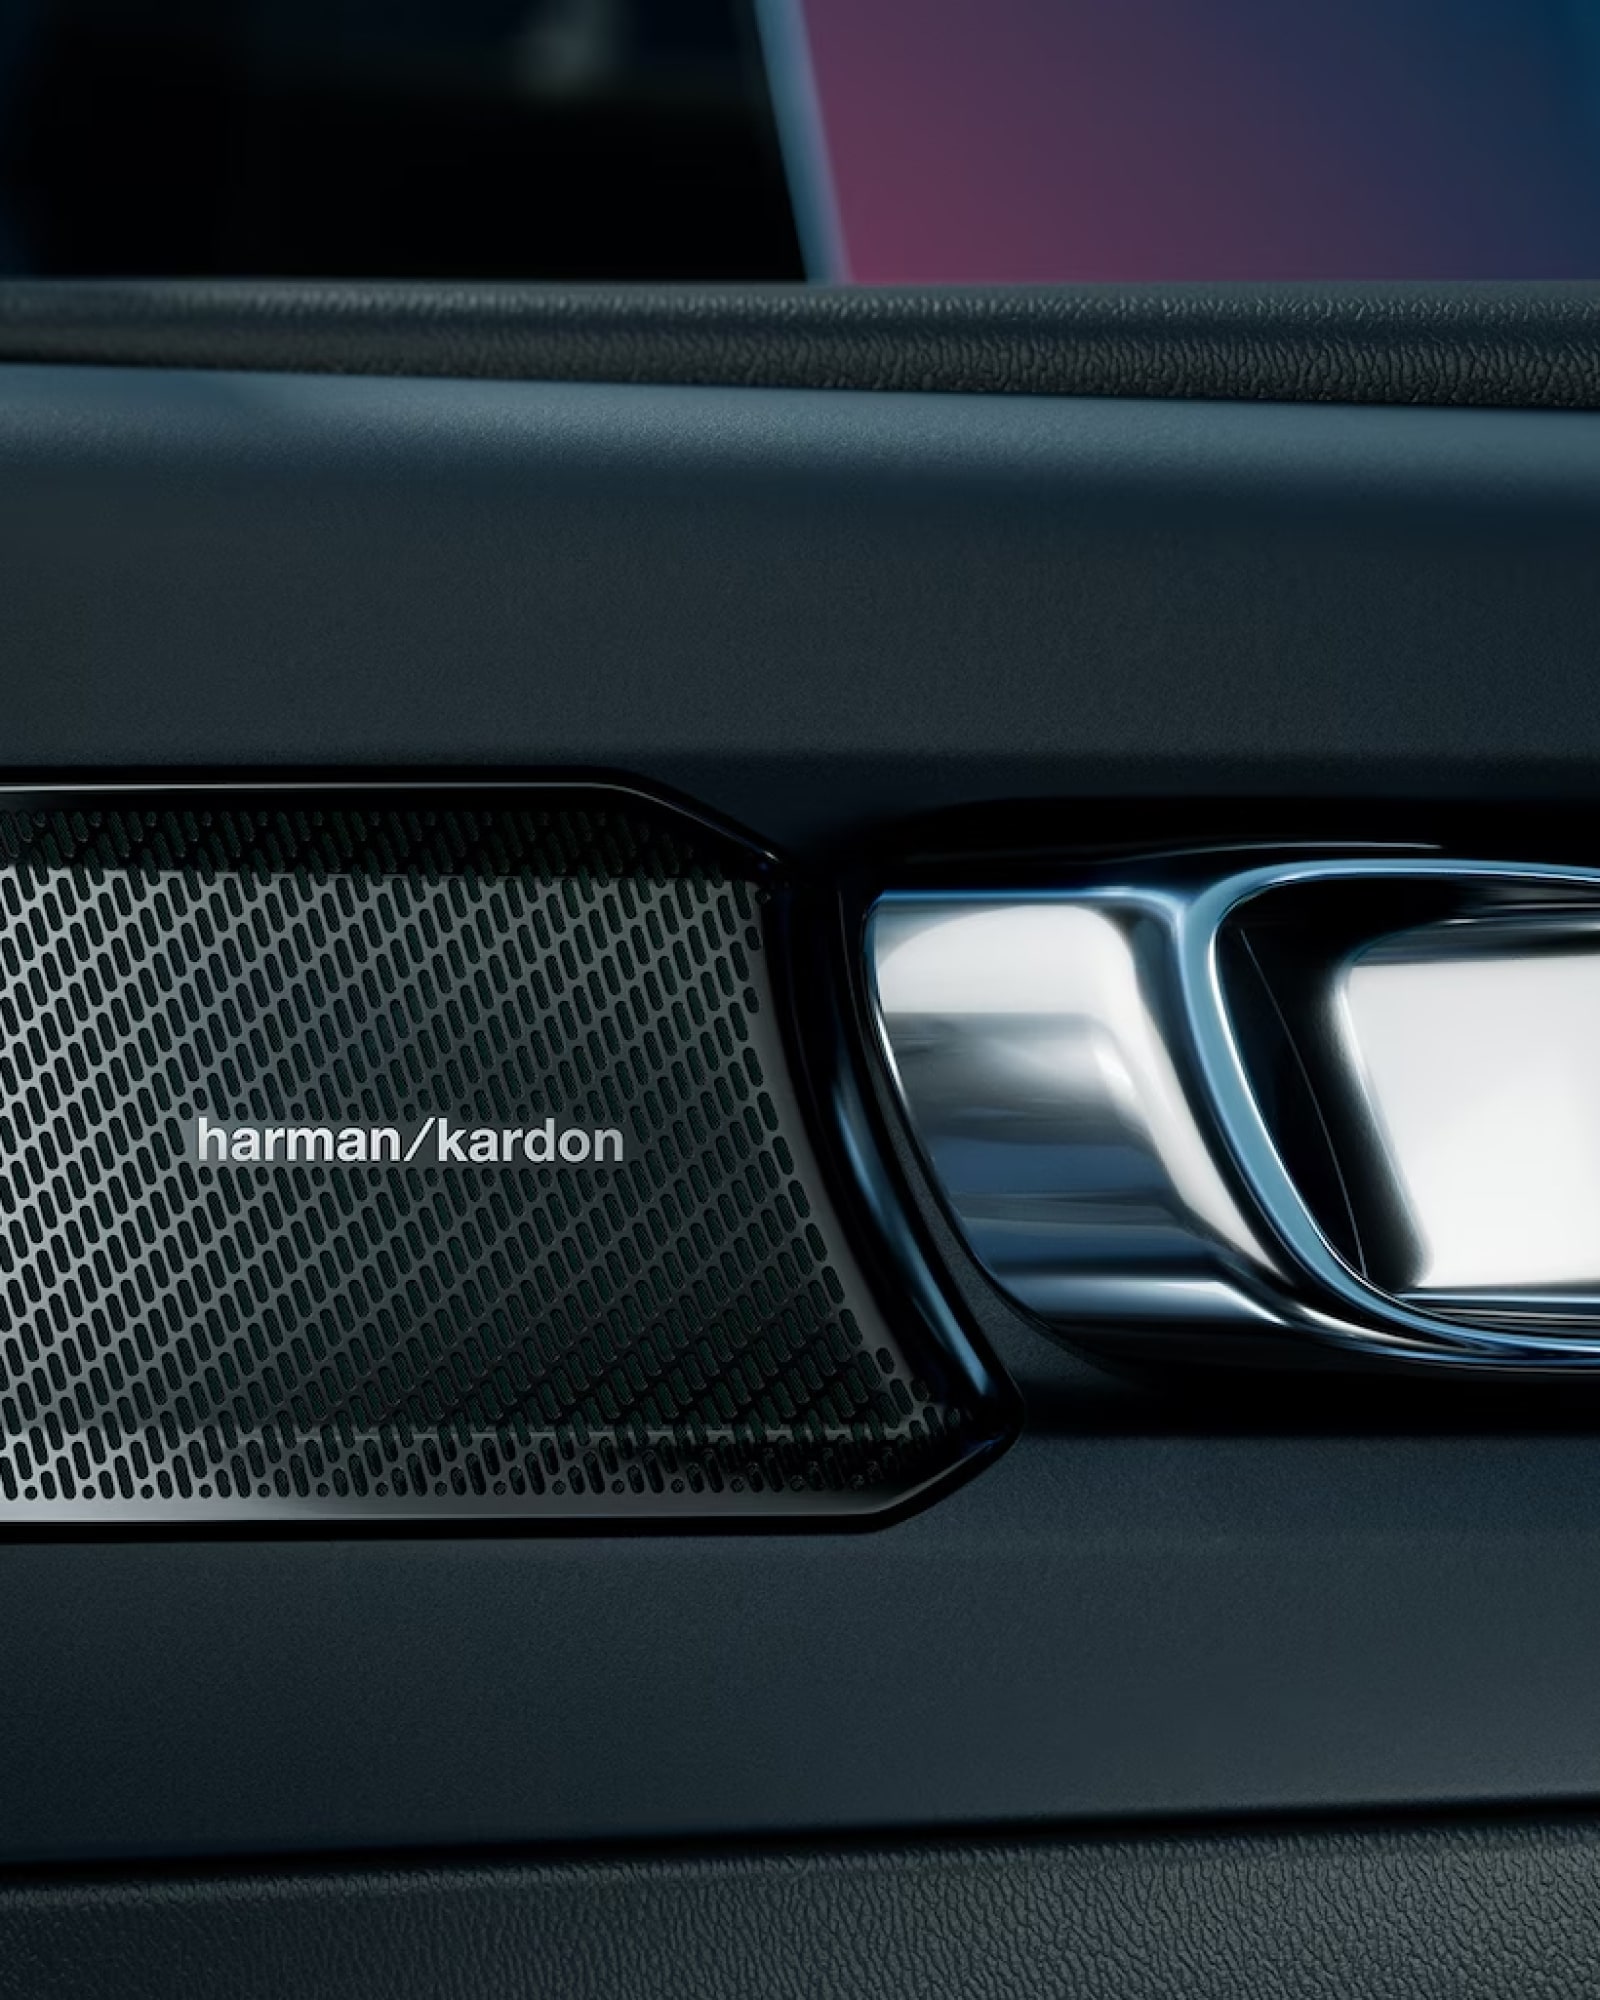 Un altoparlante Harman Kardon, parte dell'impianto audio di alta qualità disponibile nella Volvo EC40.